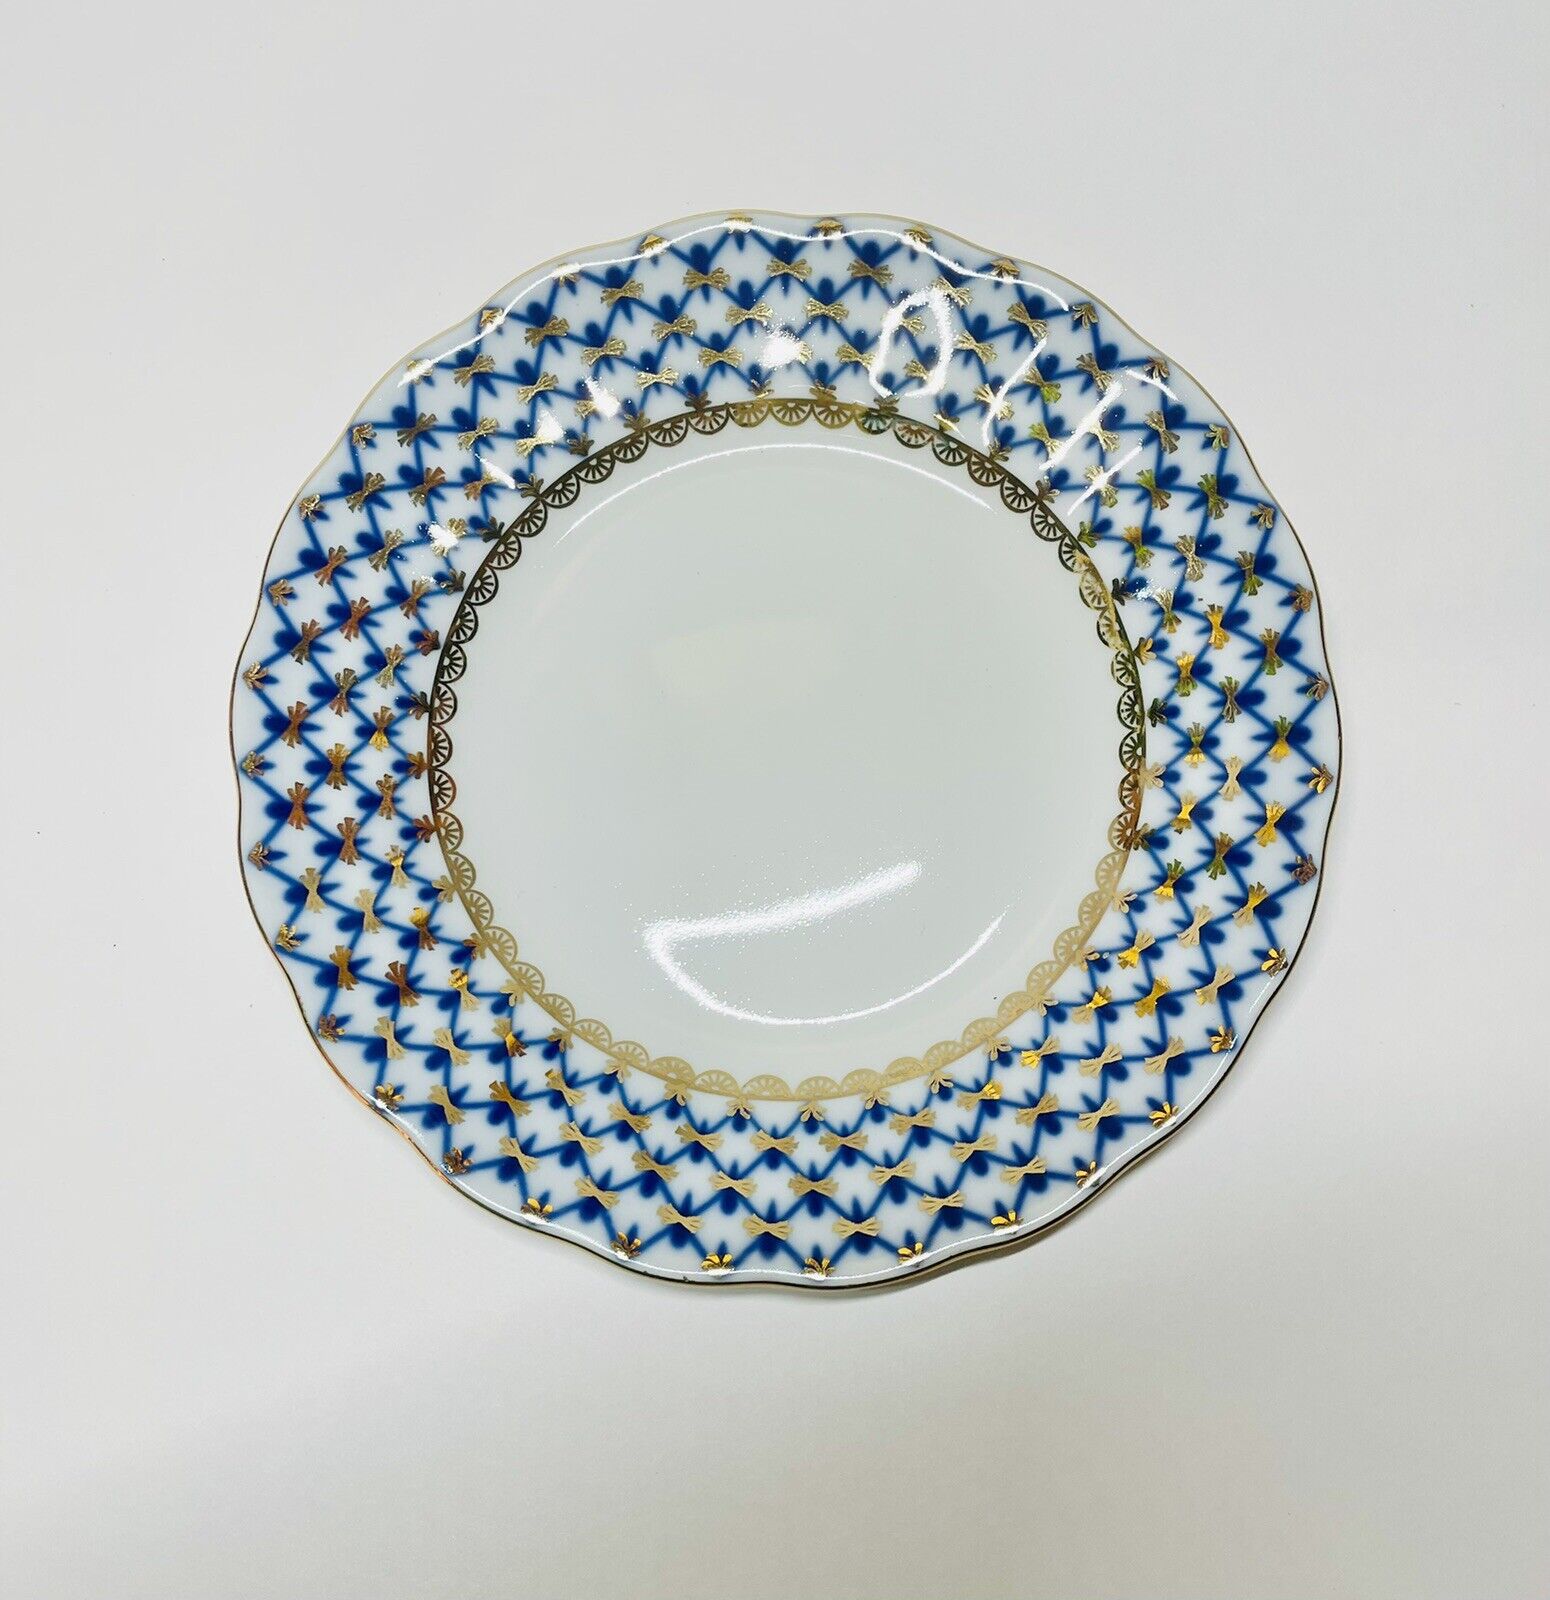 Imperial/Lomonosov Porcelain Cobalt Net Dessert Plate 6-inch